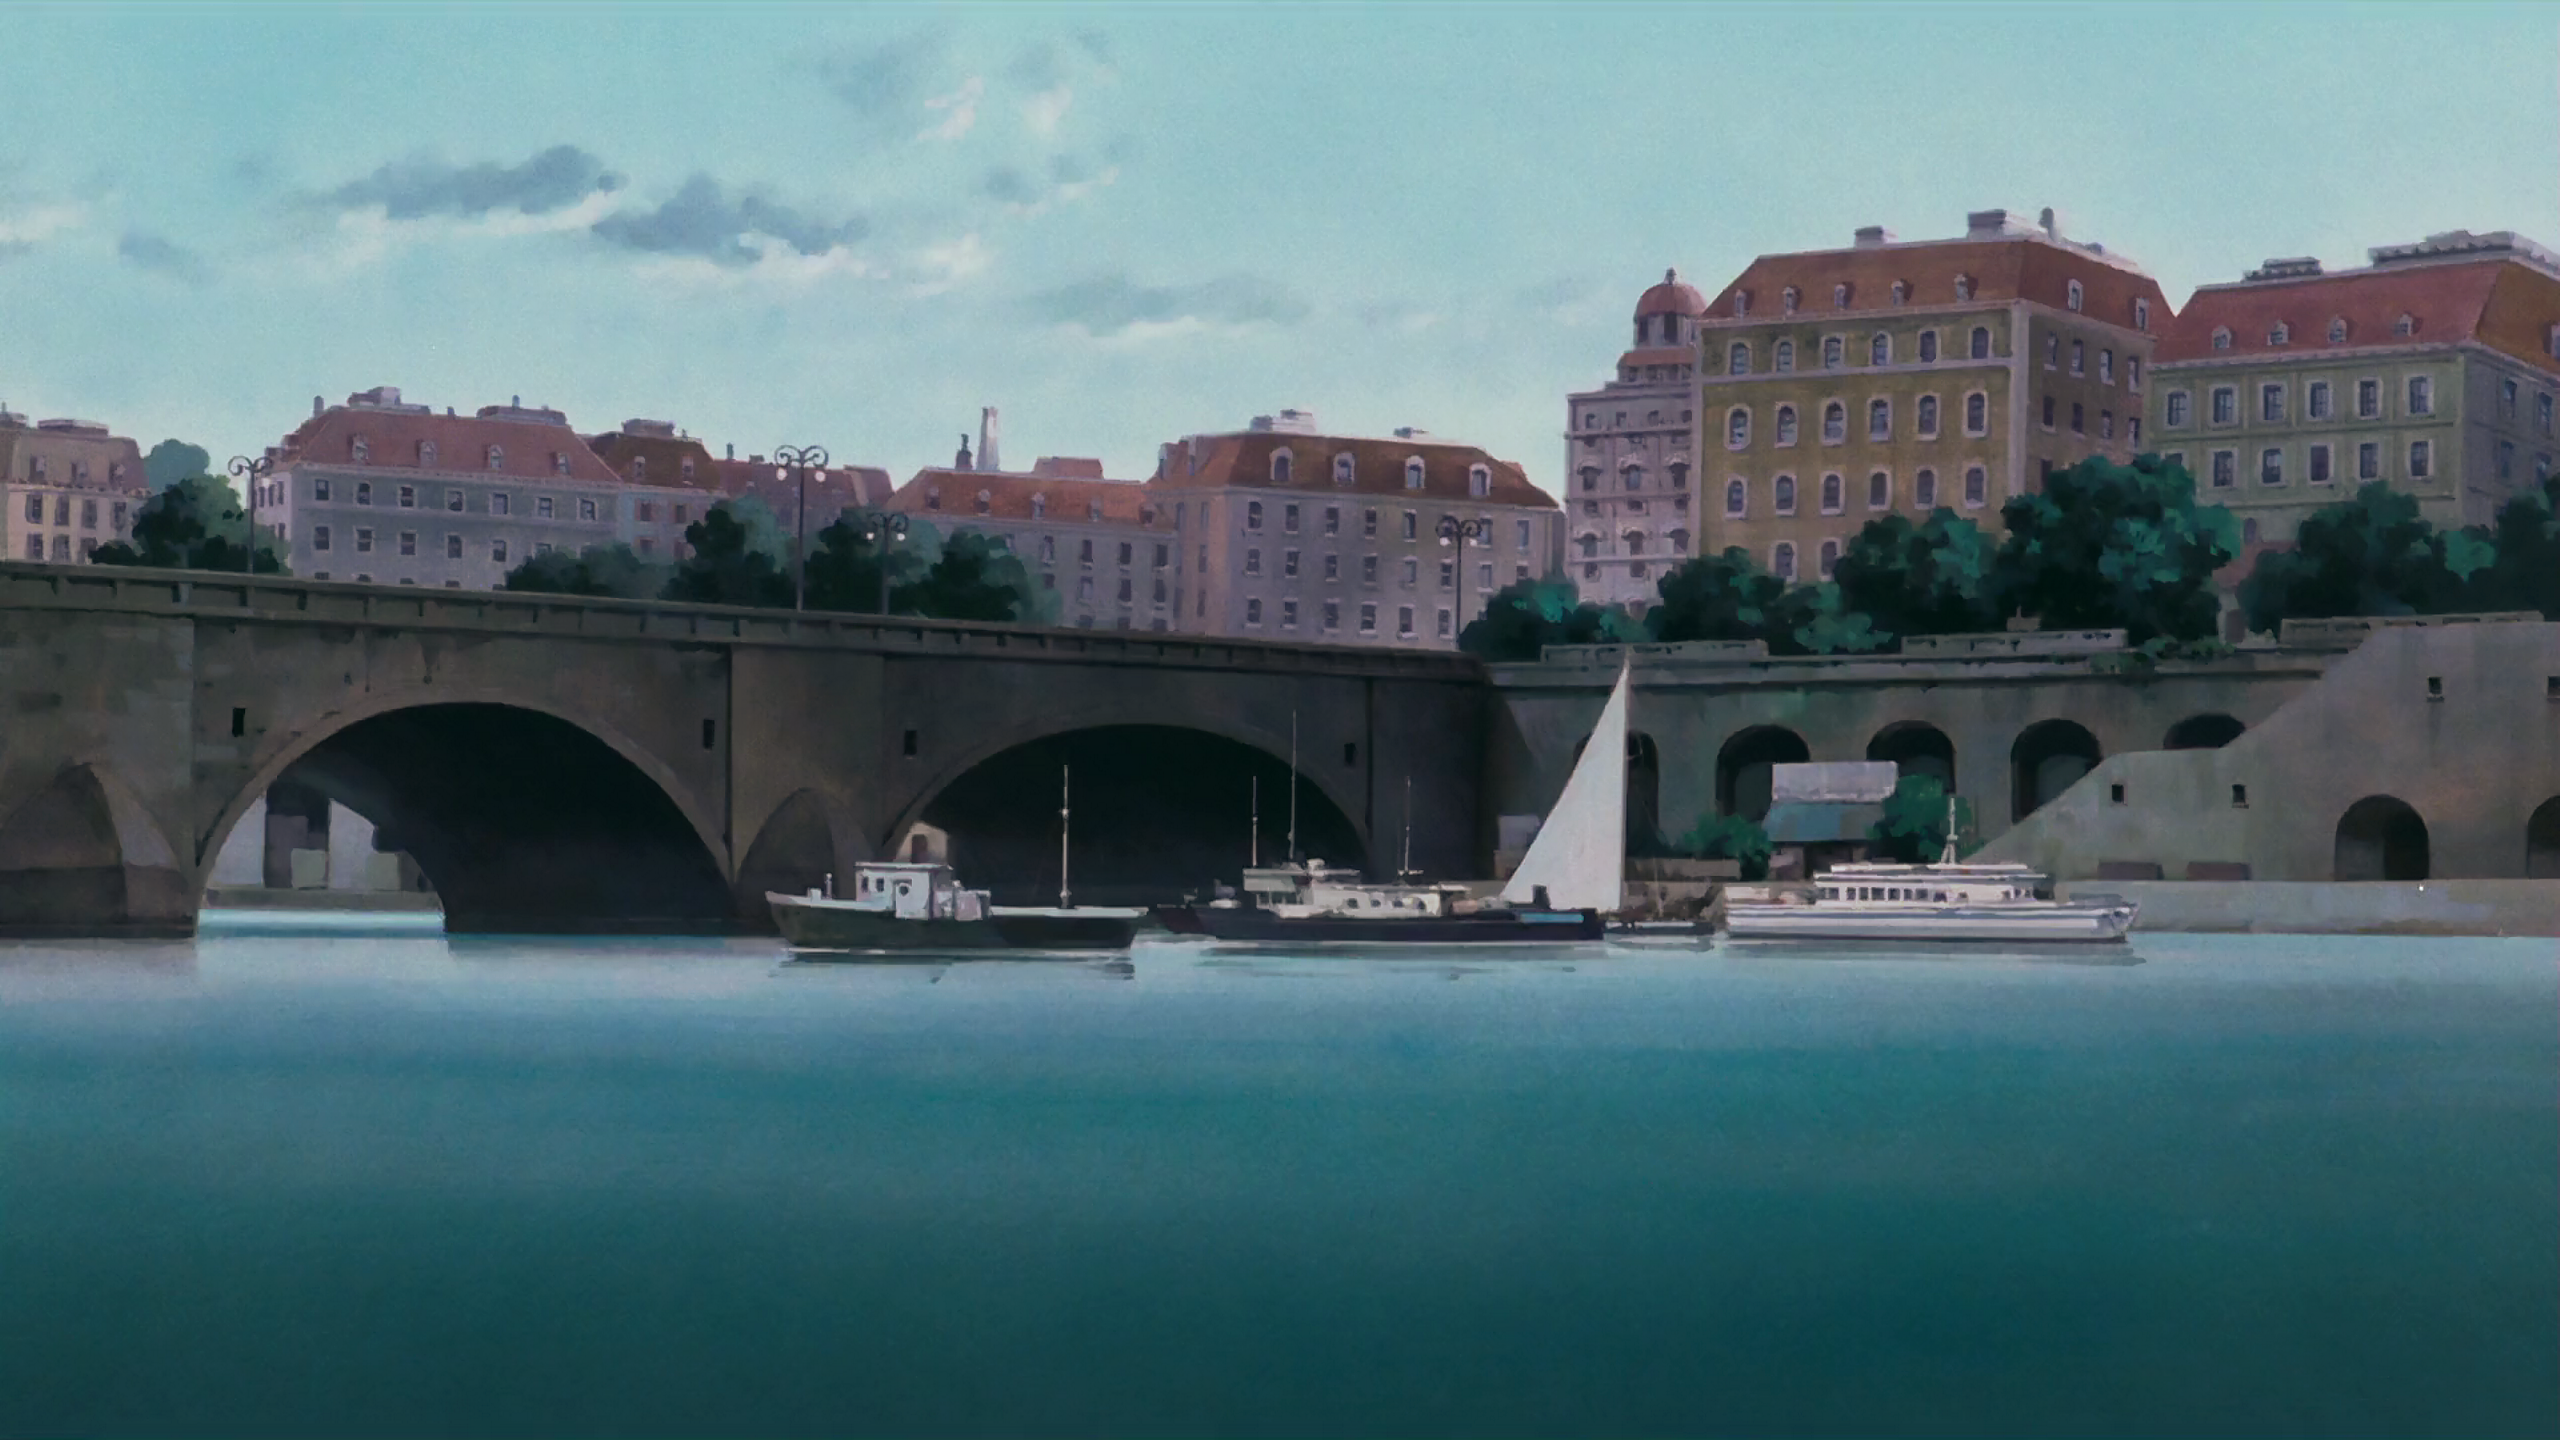 General 2560x1440 Studio Ghibli anime cityscape river